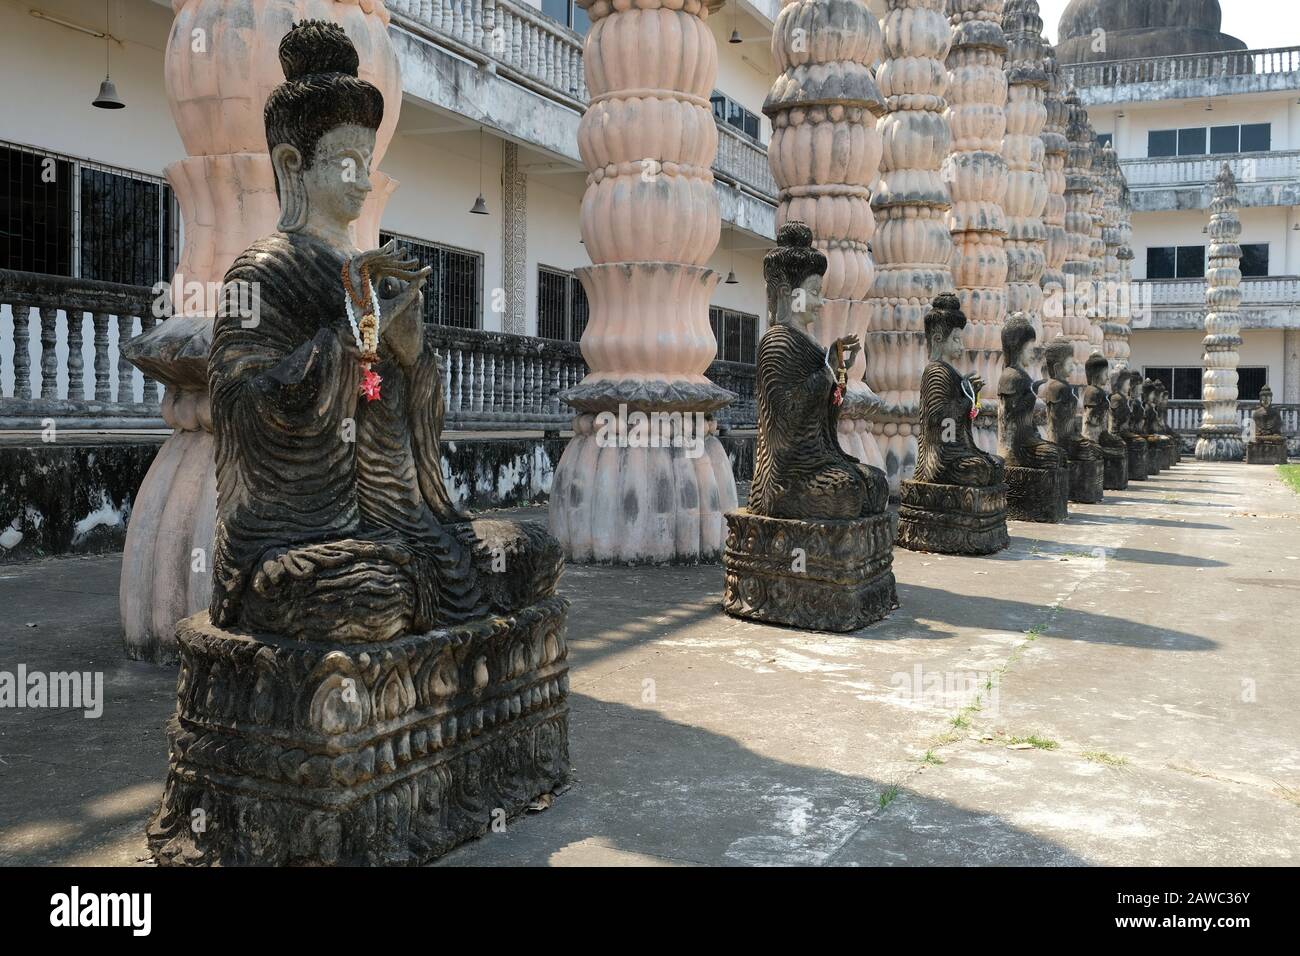 Nong Khai Isan Tailandia - esculturas búdicas en el templo budista Wat Khaek Foto de stock